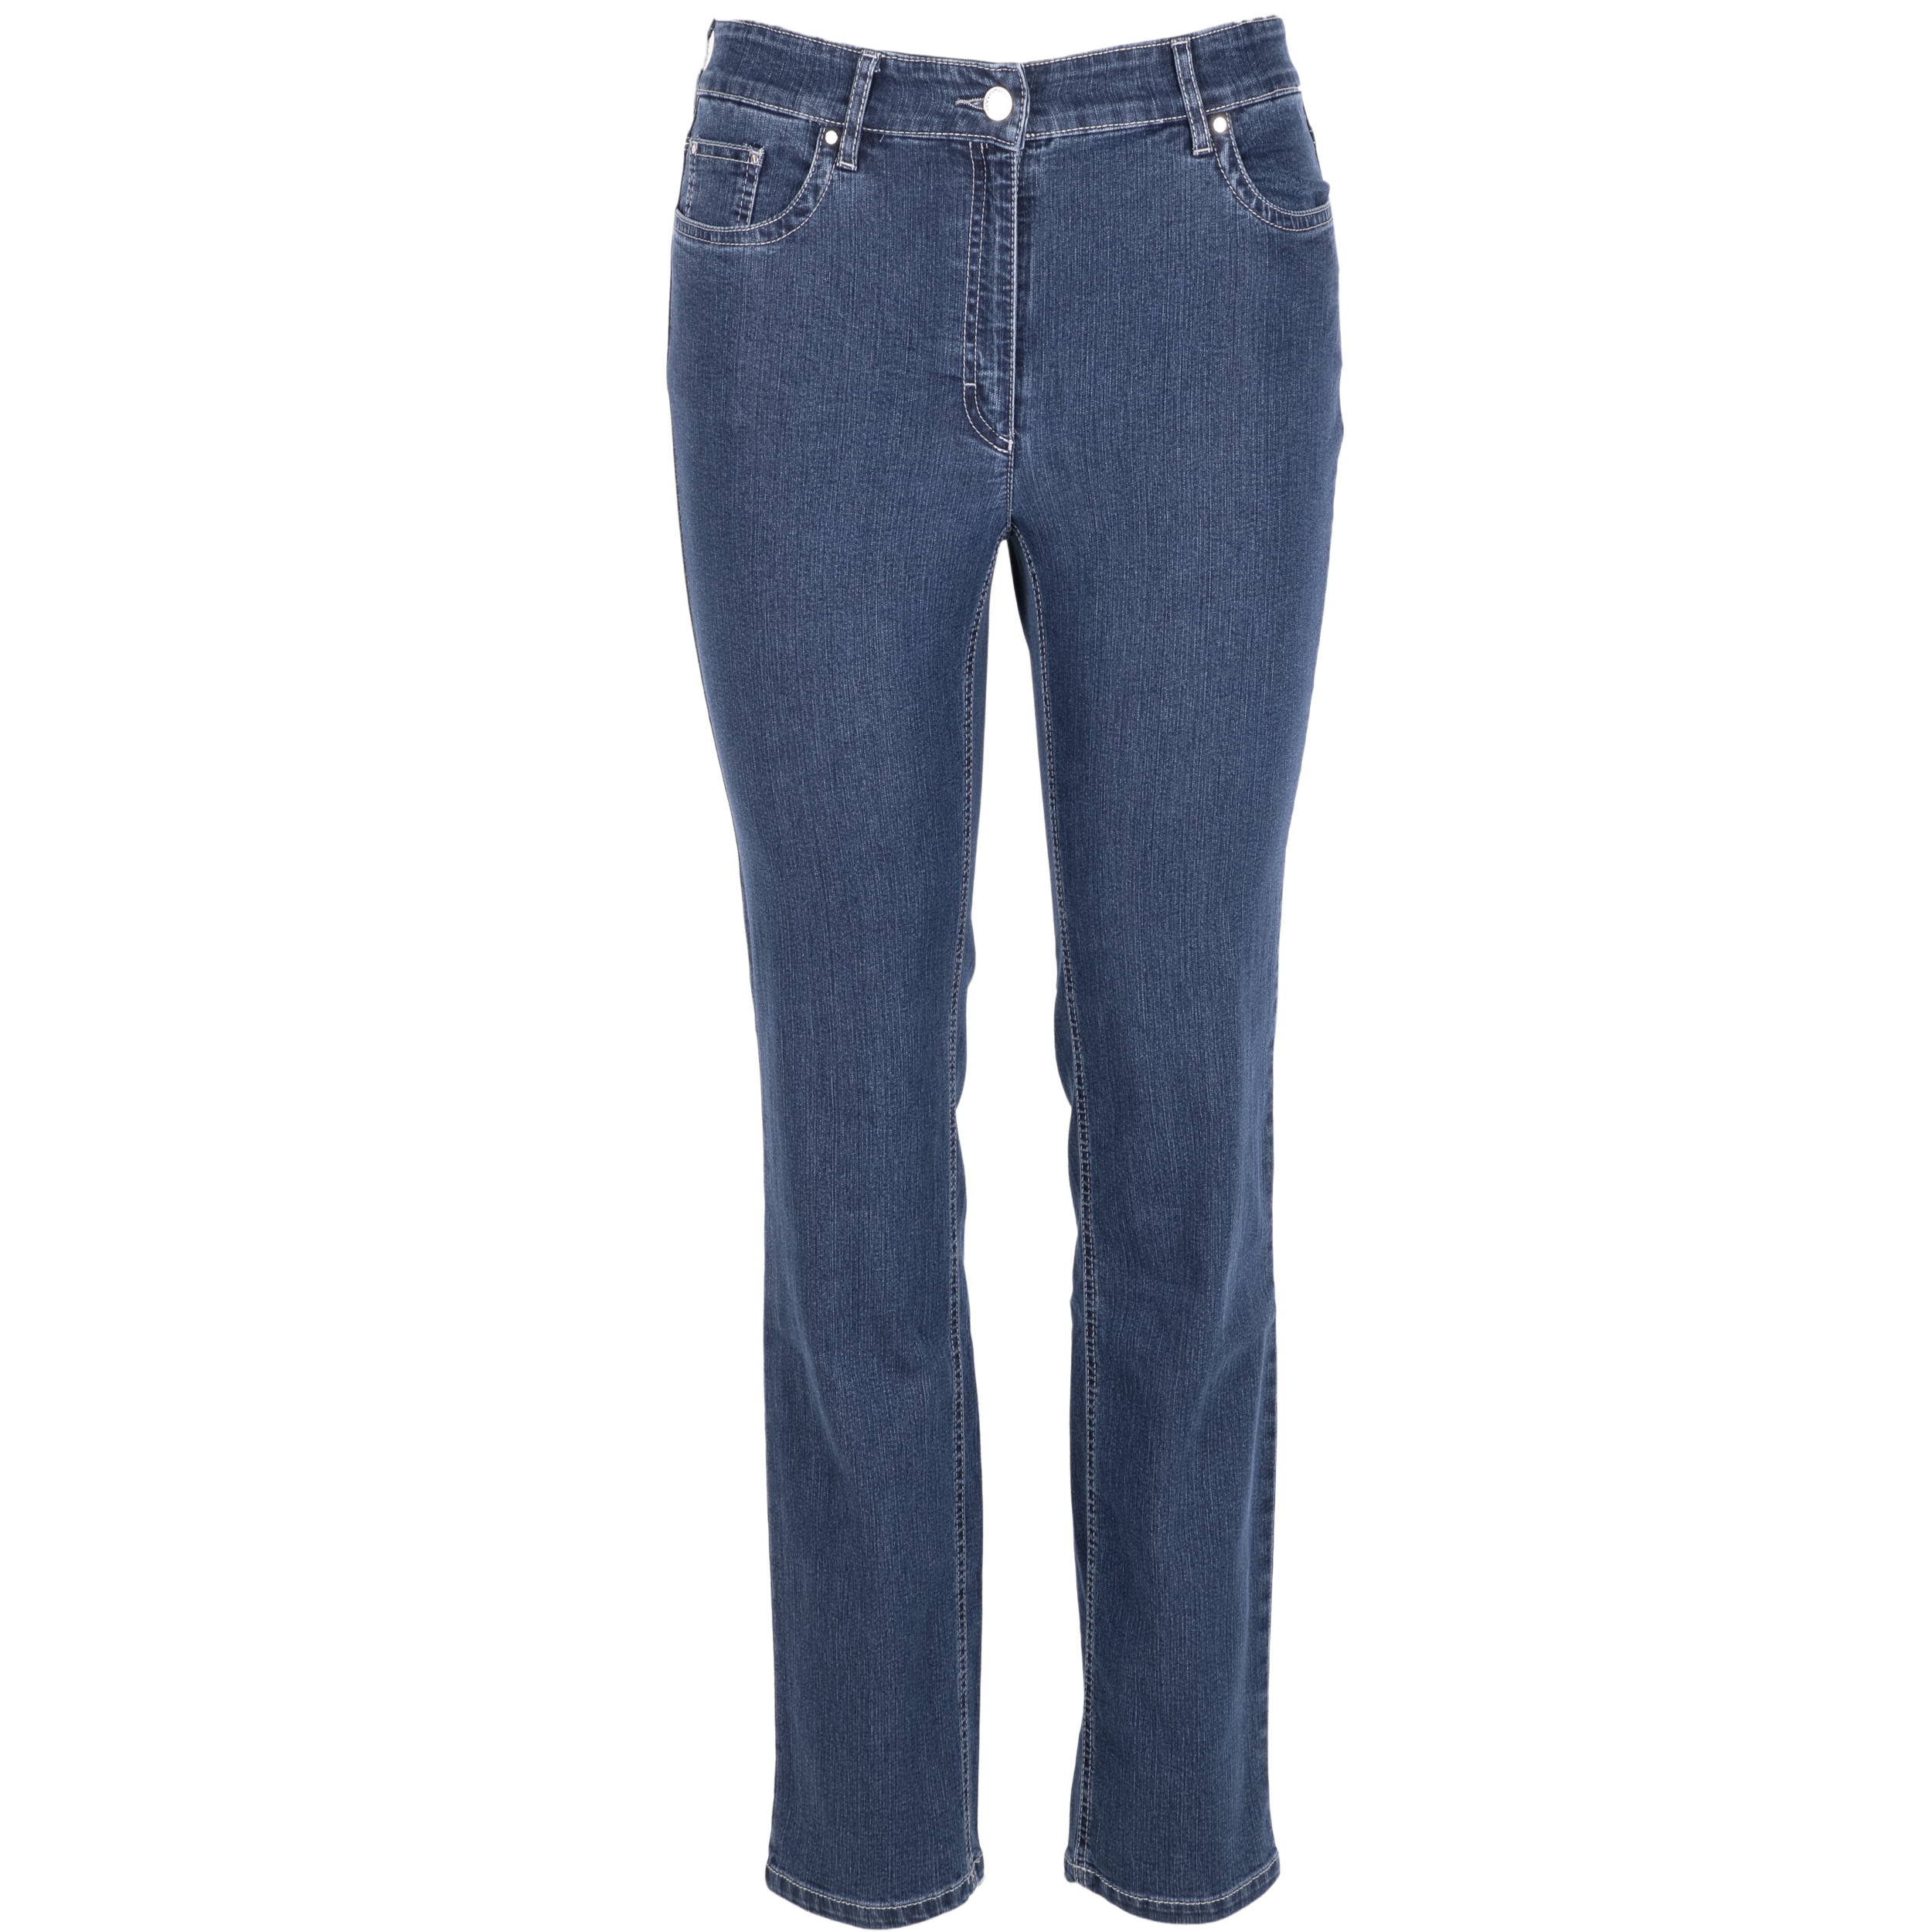 Zerres Damen Jeans Cora comfort S 46 grau